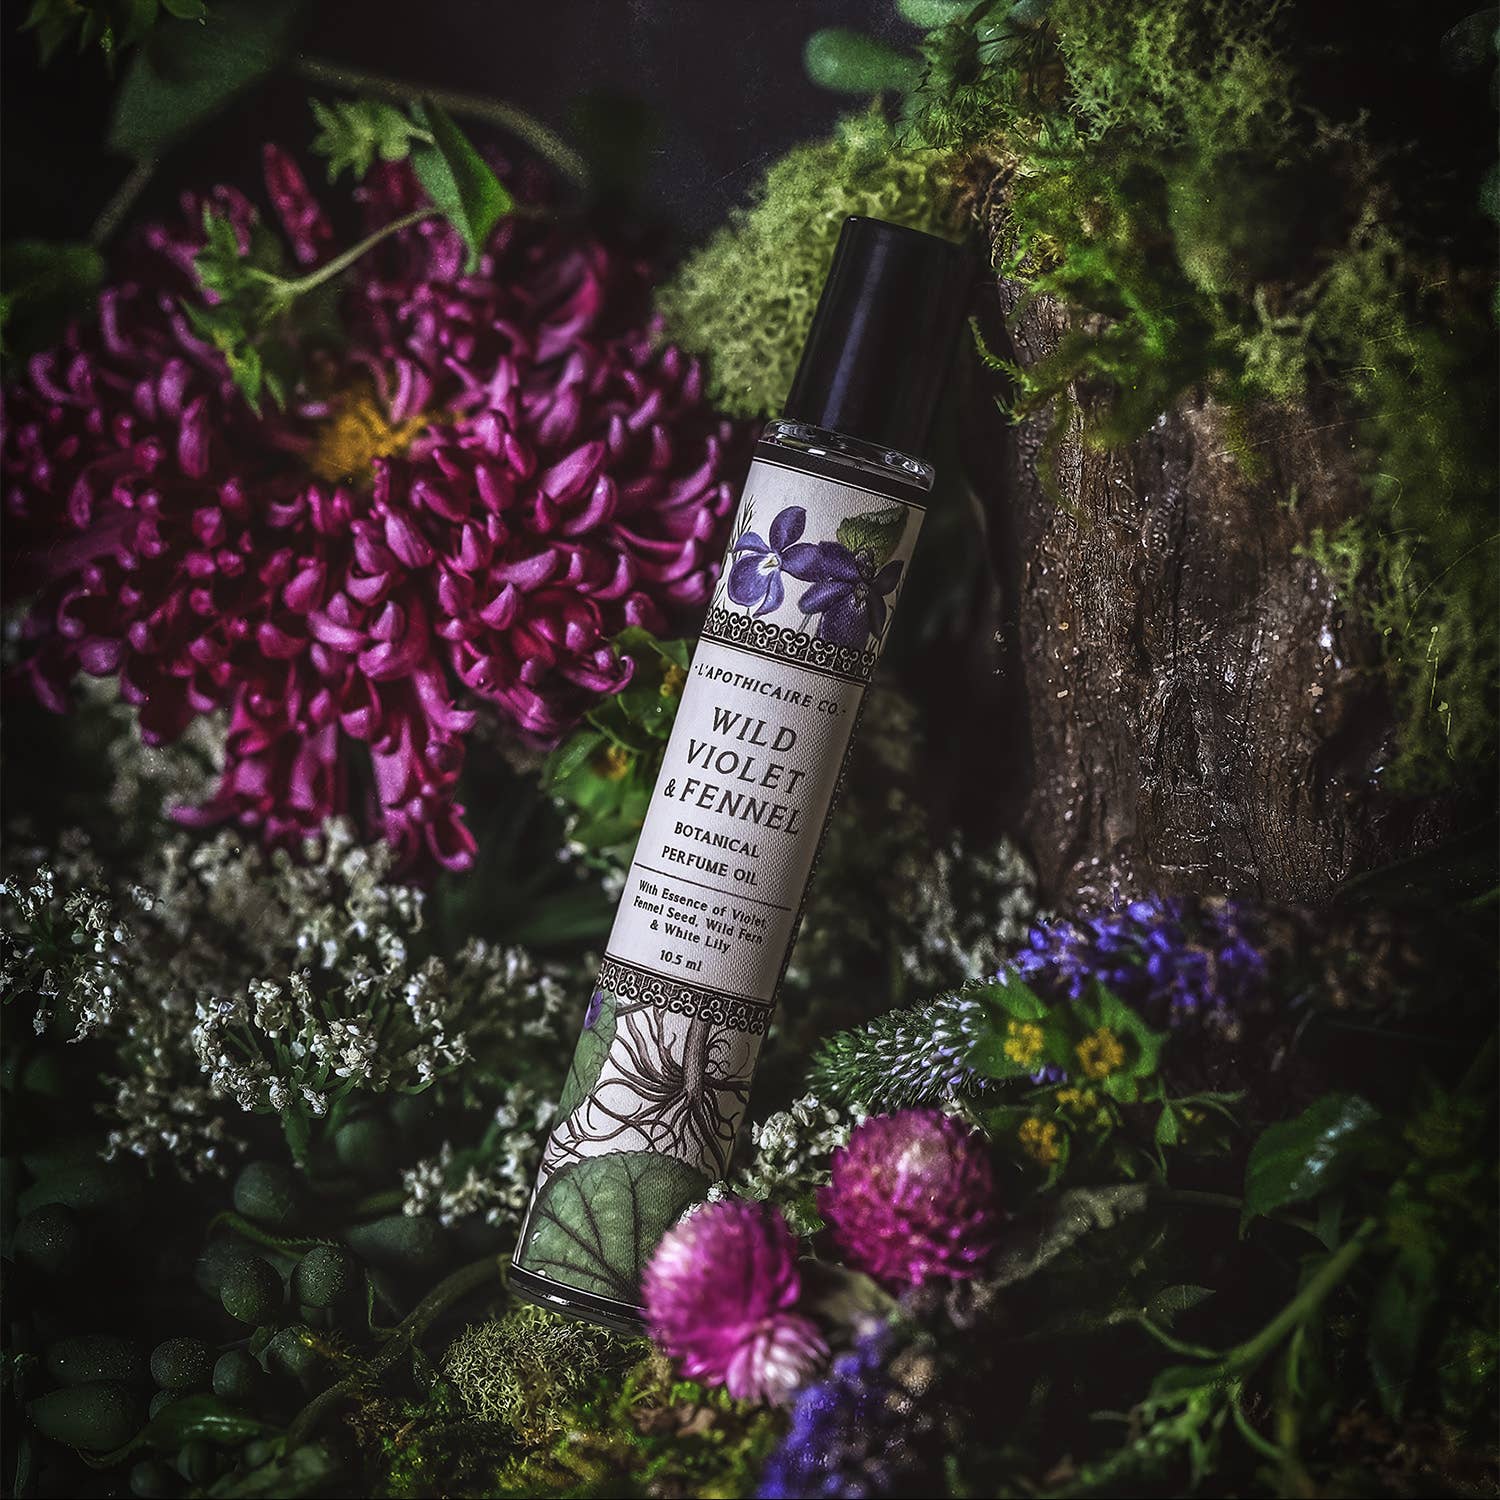 Wild Violet + Fennel | Perfume Oil - La De Da